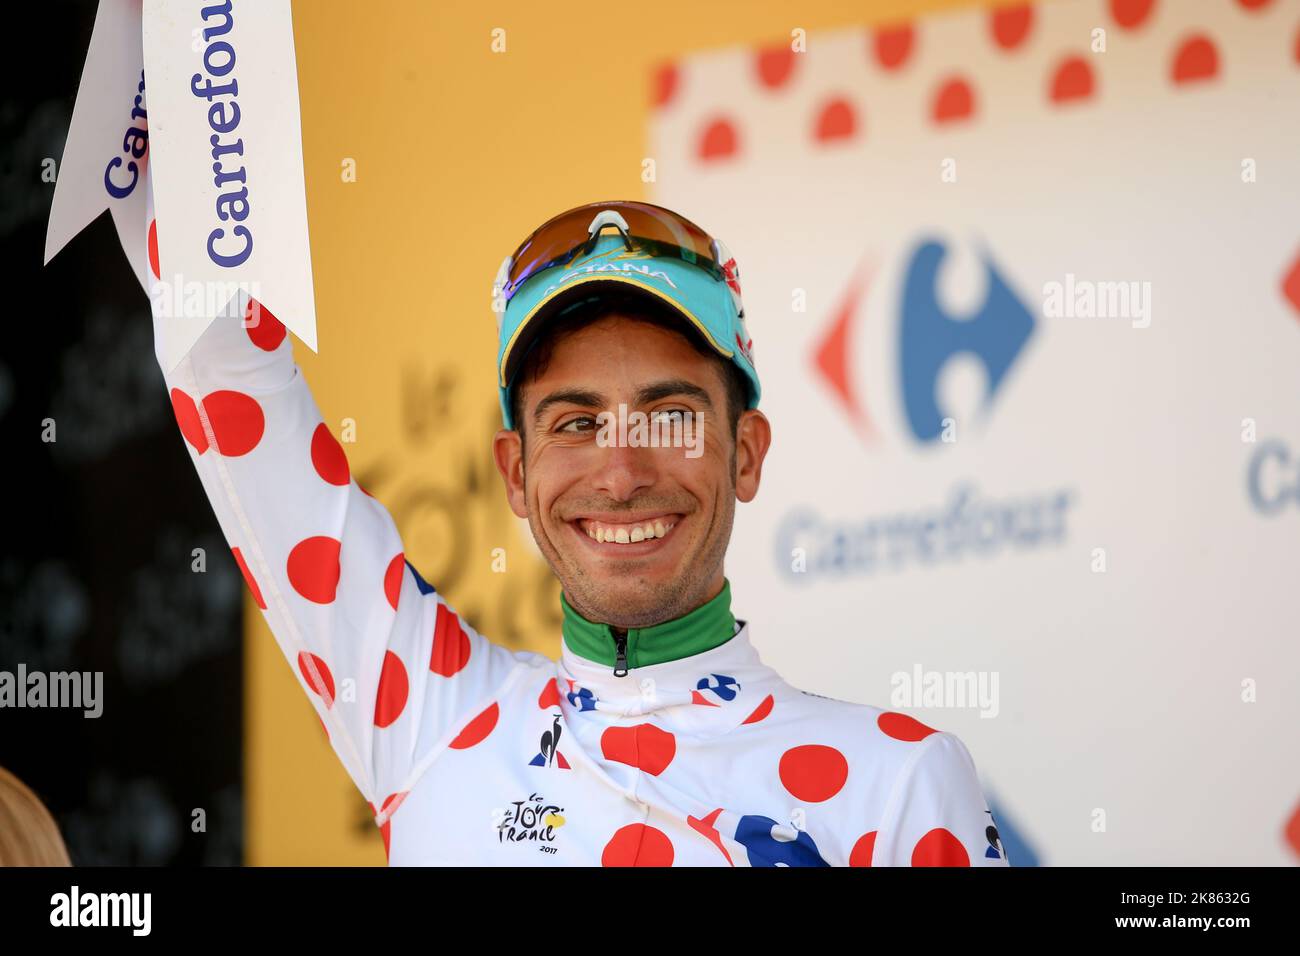 Italia's Fabio Aru (Astana) on the podium celebrating climbing into the Polka Dot Climbers jersey Stock Photo